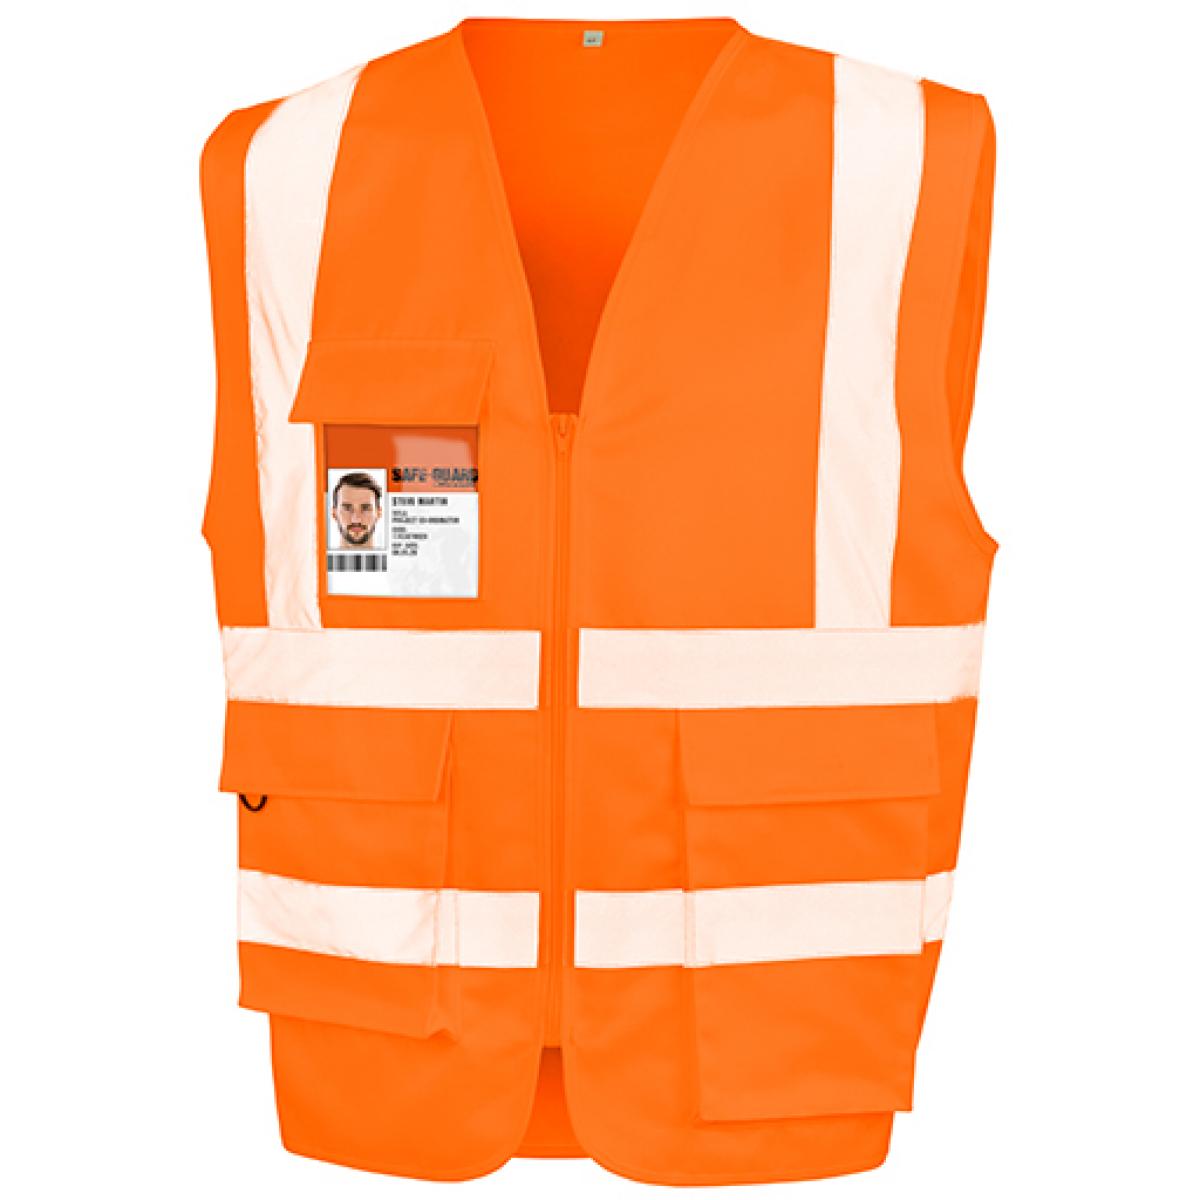 Hersteller: Result Safe-Guard Herstellernummer: R477X Artikelbezeichnung: Heavy Duty Polycotton Security Vest - Sicherheitsweste Farbe: Fluorescent Orange